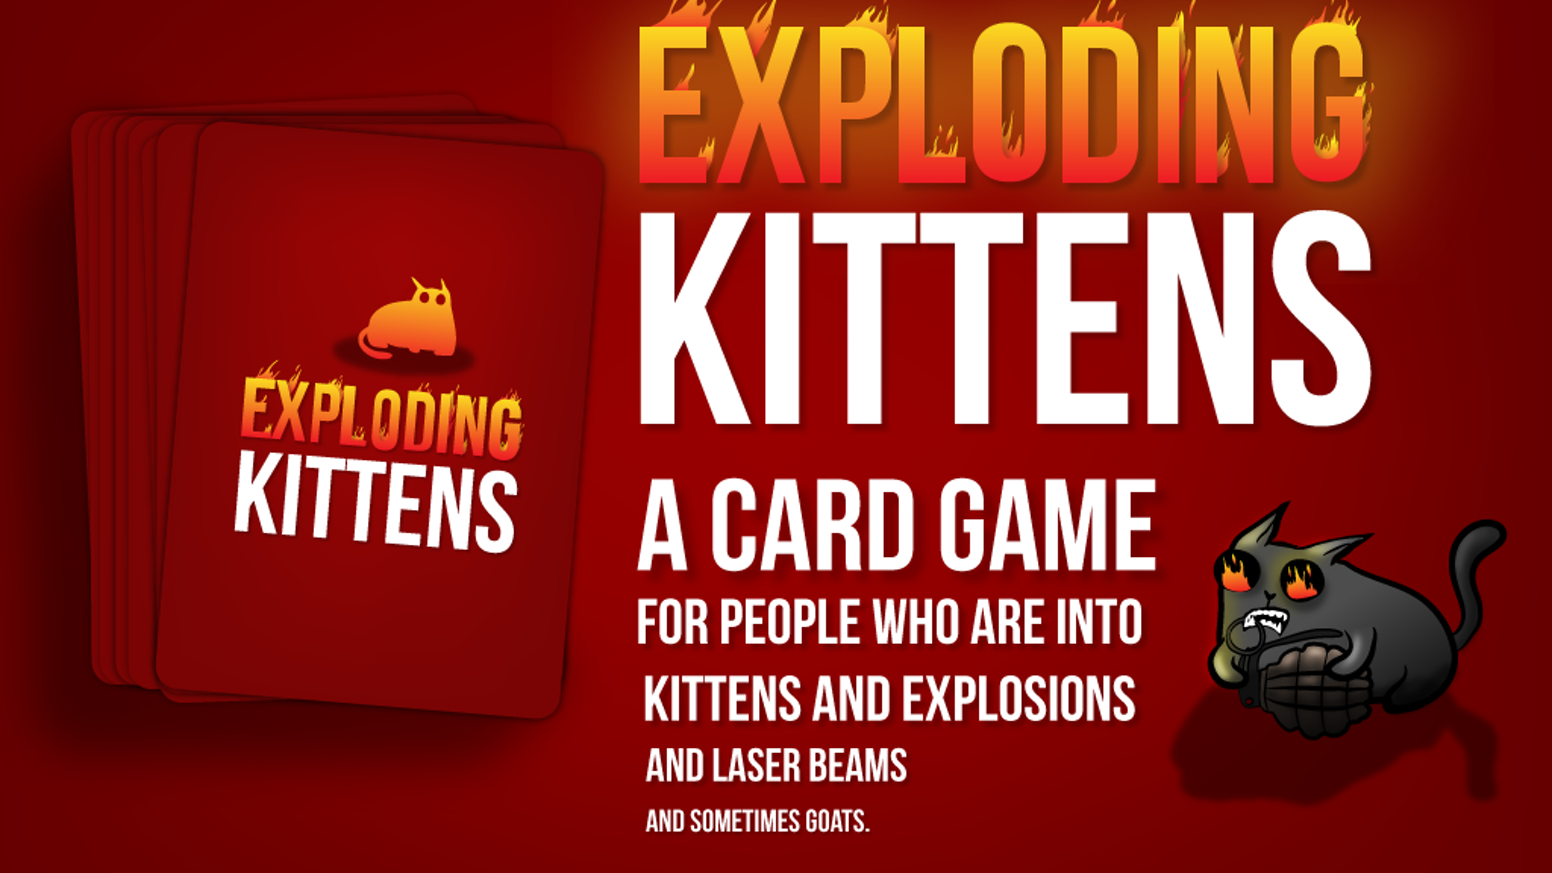 Exploding kittens